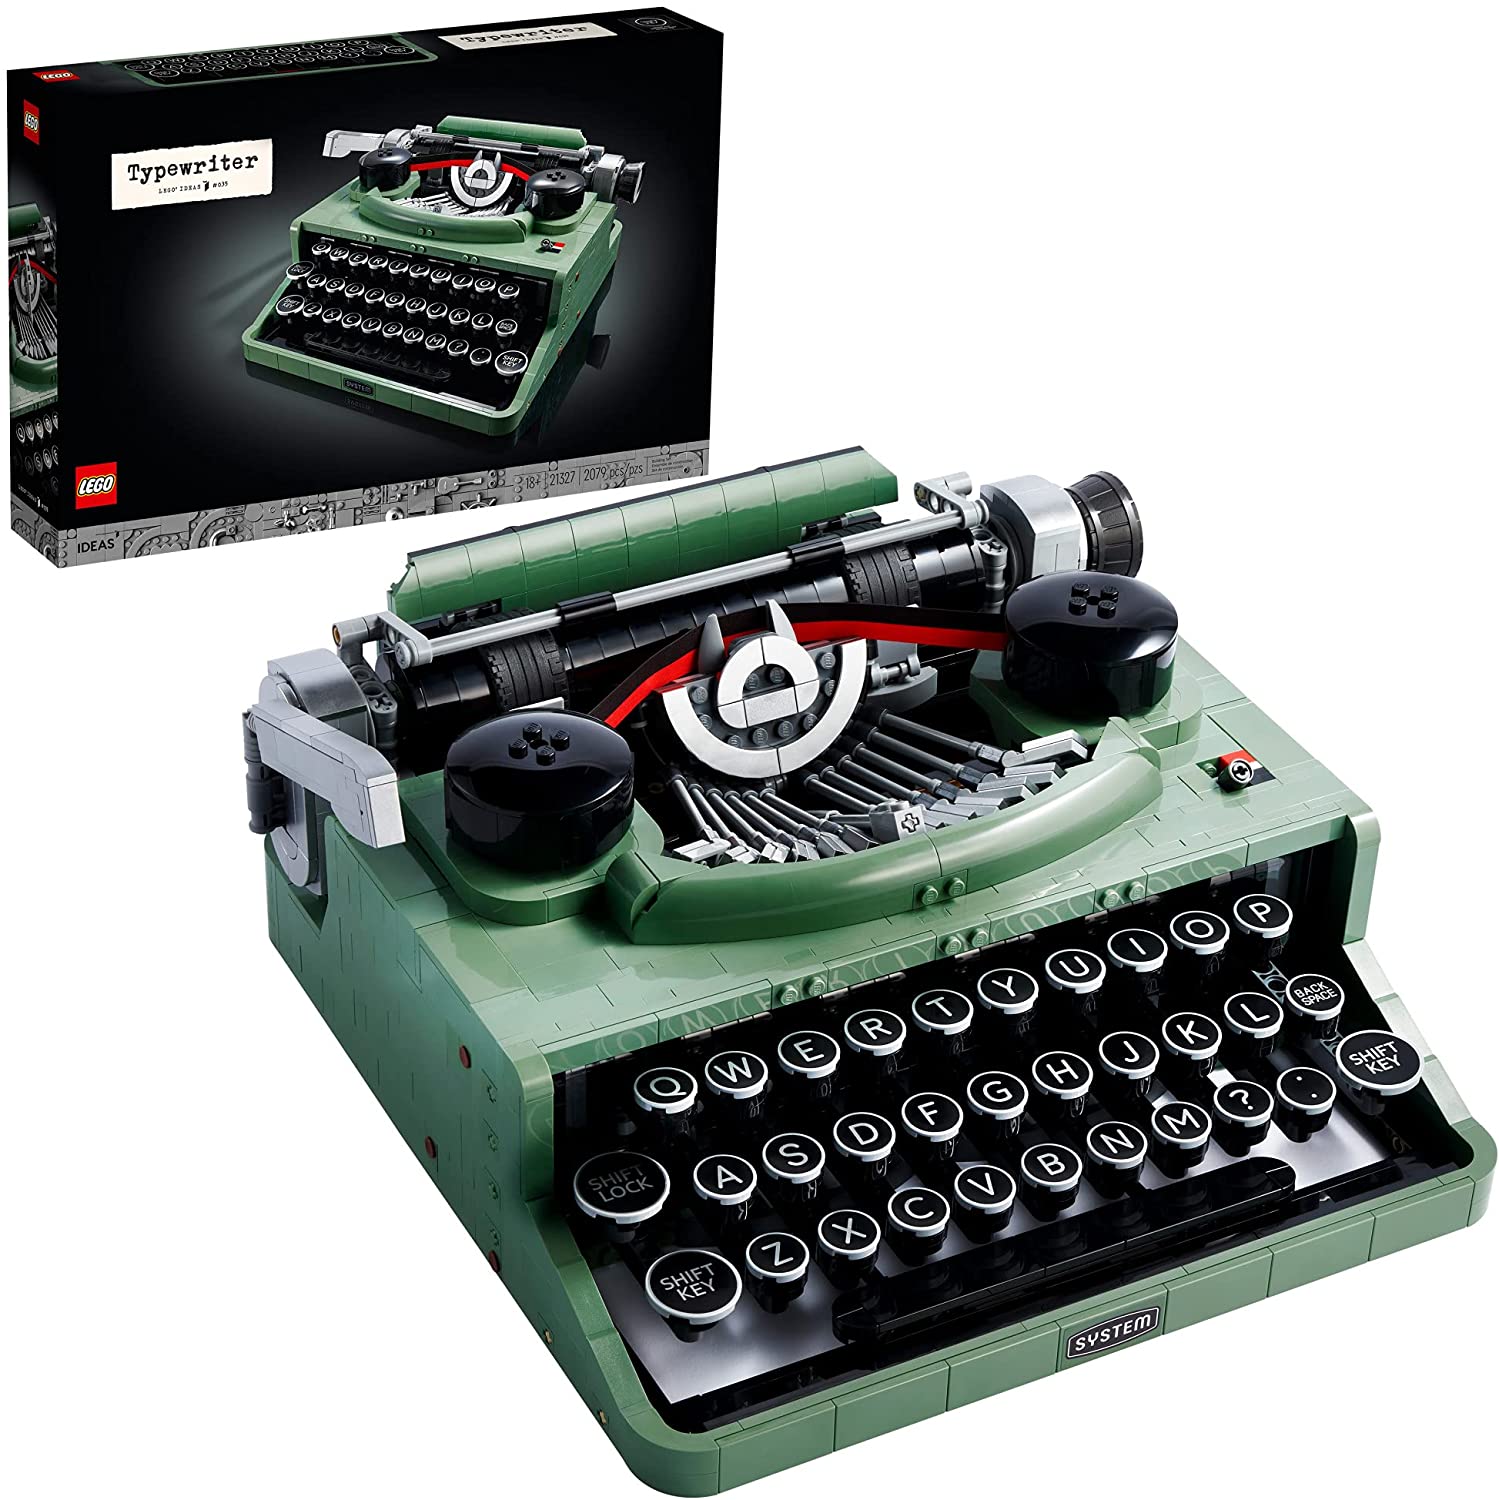 royal typewriter lego set for adults